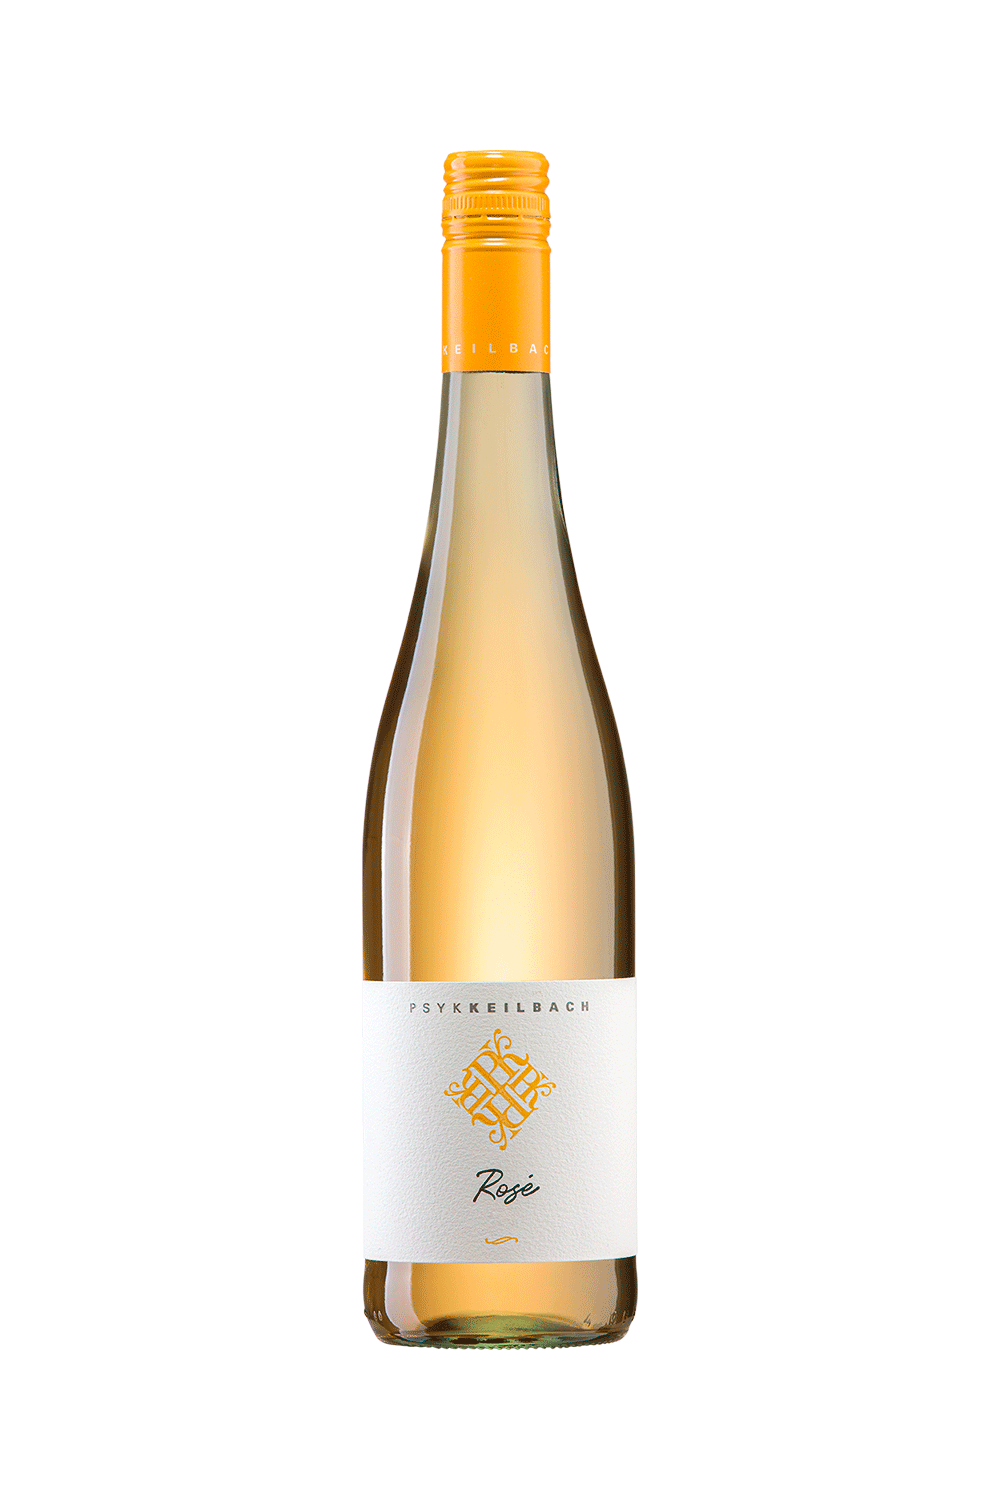 Eine schlanke Klarglas Schlegelflasche mit einem Maisgelben Schraubverschluss. Auf dem weißen Etikett befindet sich das Logo des Abfüllers PSYK KEILBACH, darunter der Name des Weines 'Rosé' und der Jahrgang.